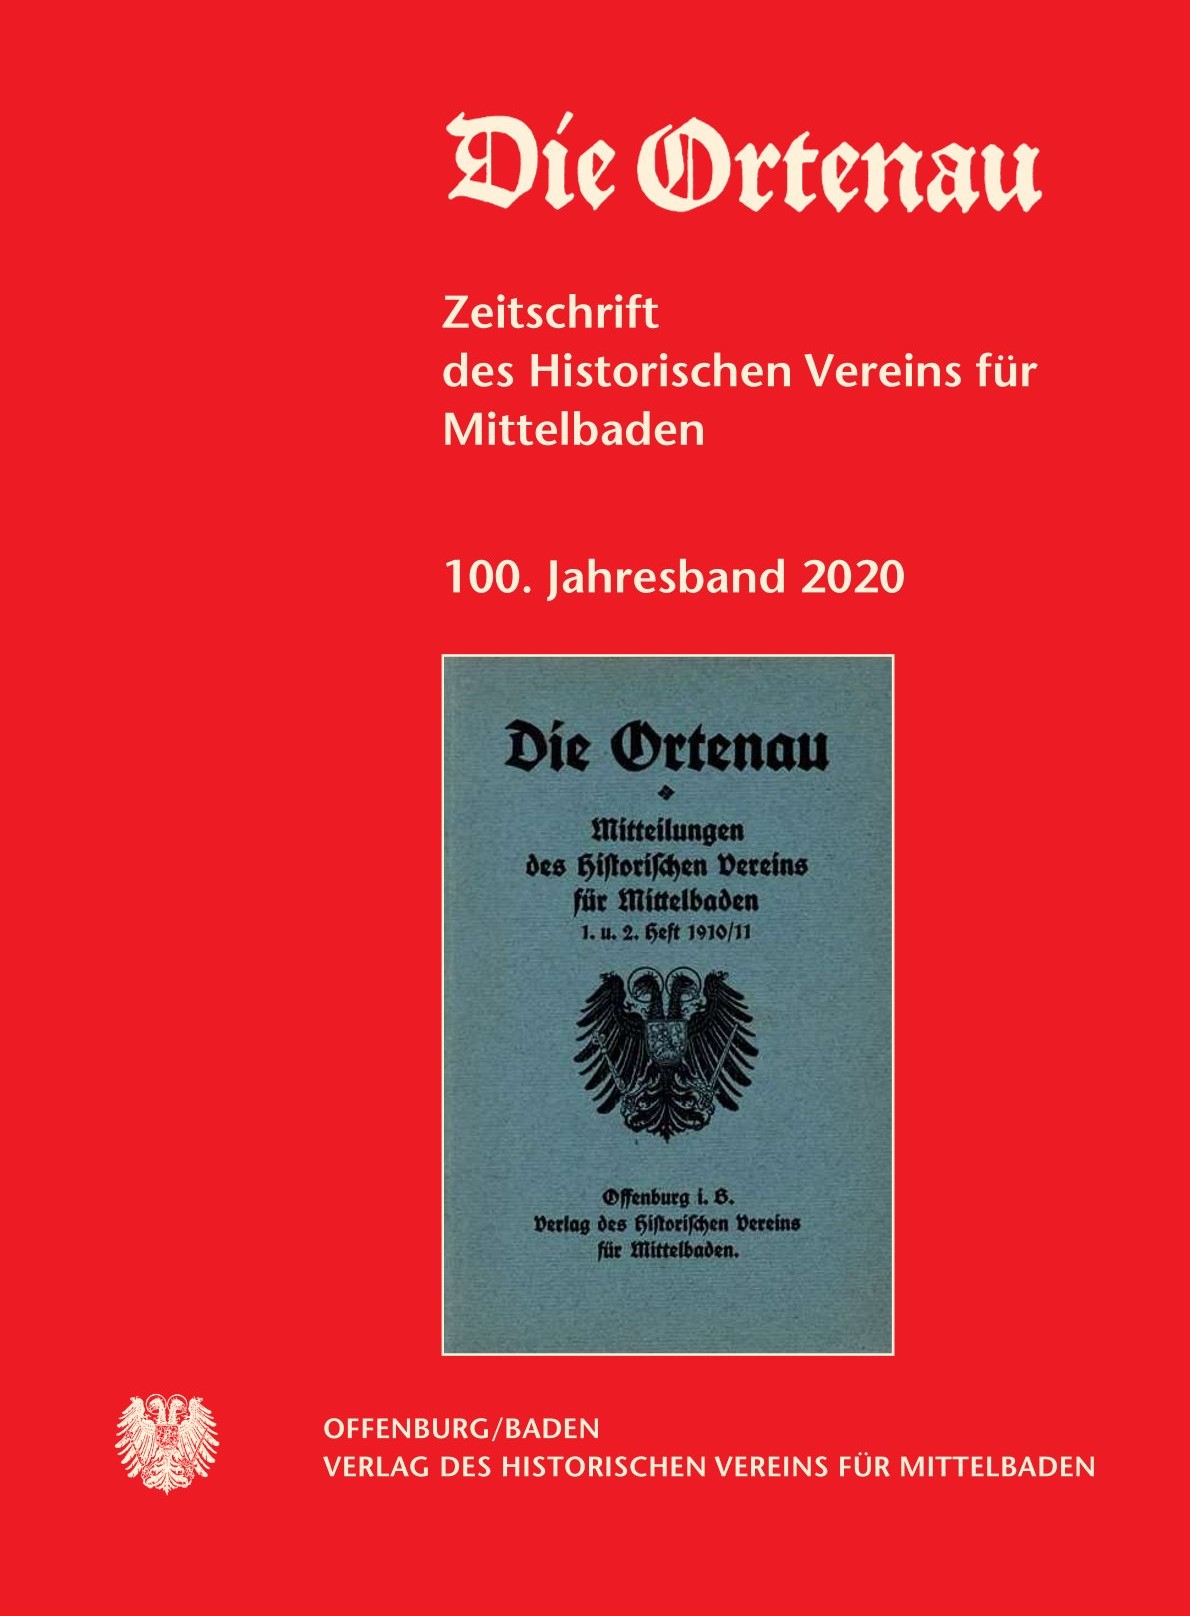 Das Bild zeigt das Cover der Zeitschrift Die Ortenau 100